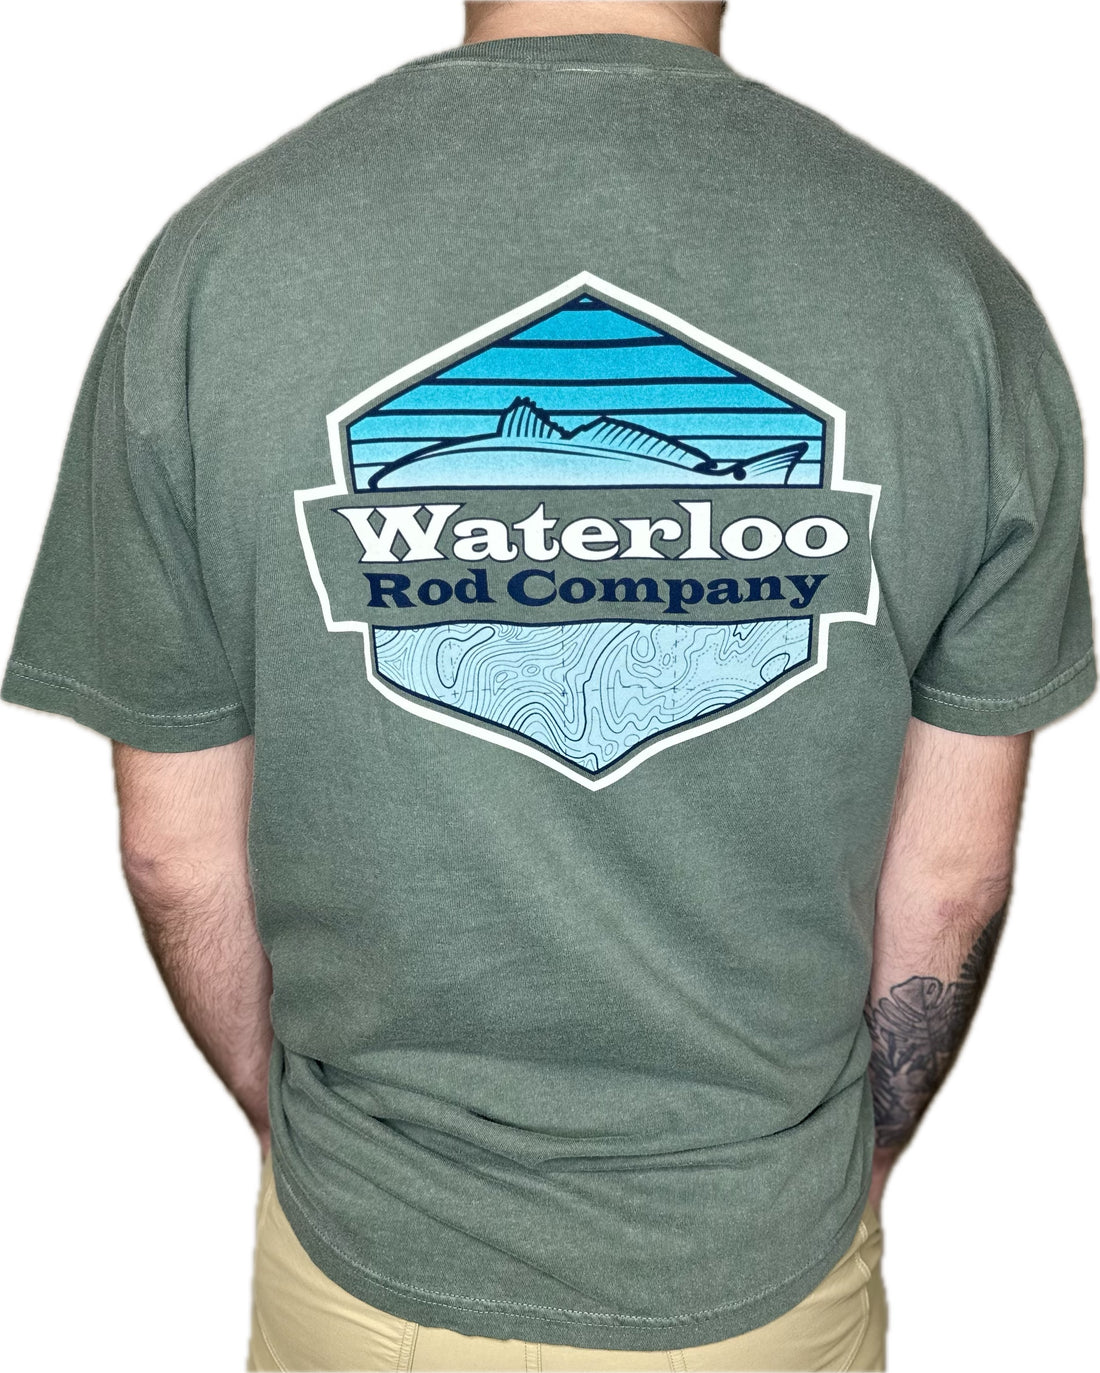 Waterloo Short Sleeve Cotton T-Shirt - Dark Moss